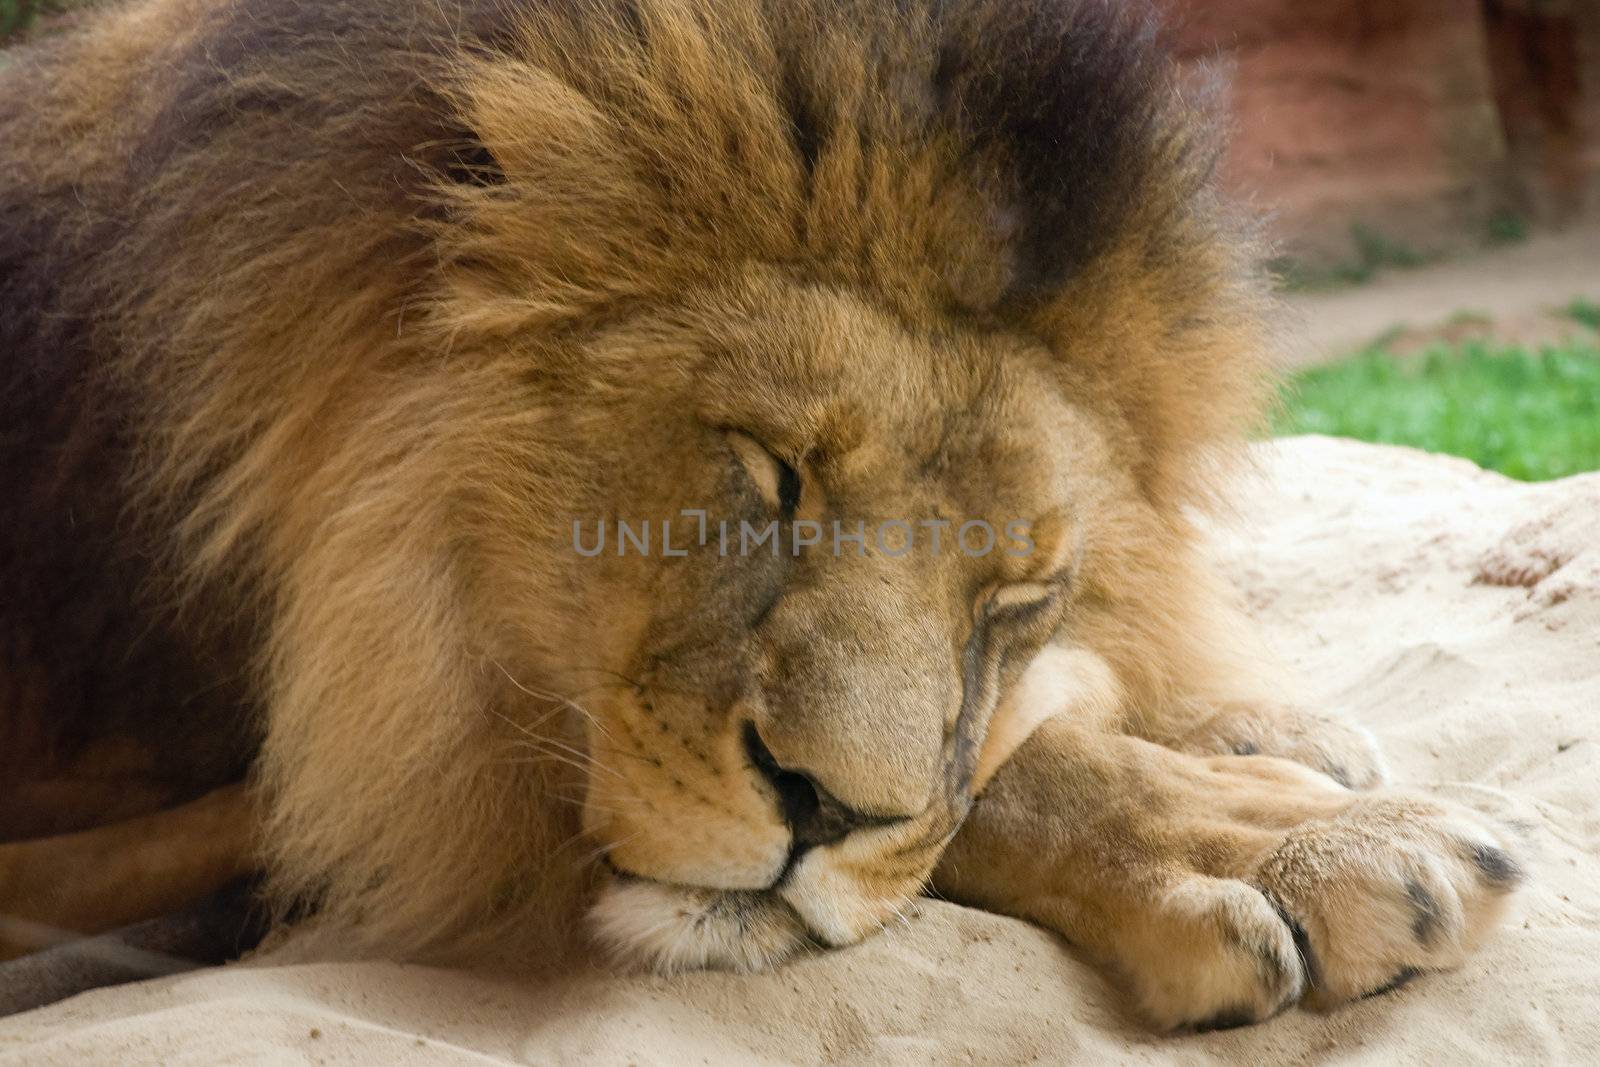 Sleeping Lion by y_serge